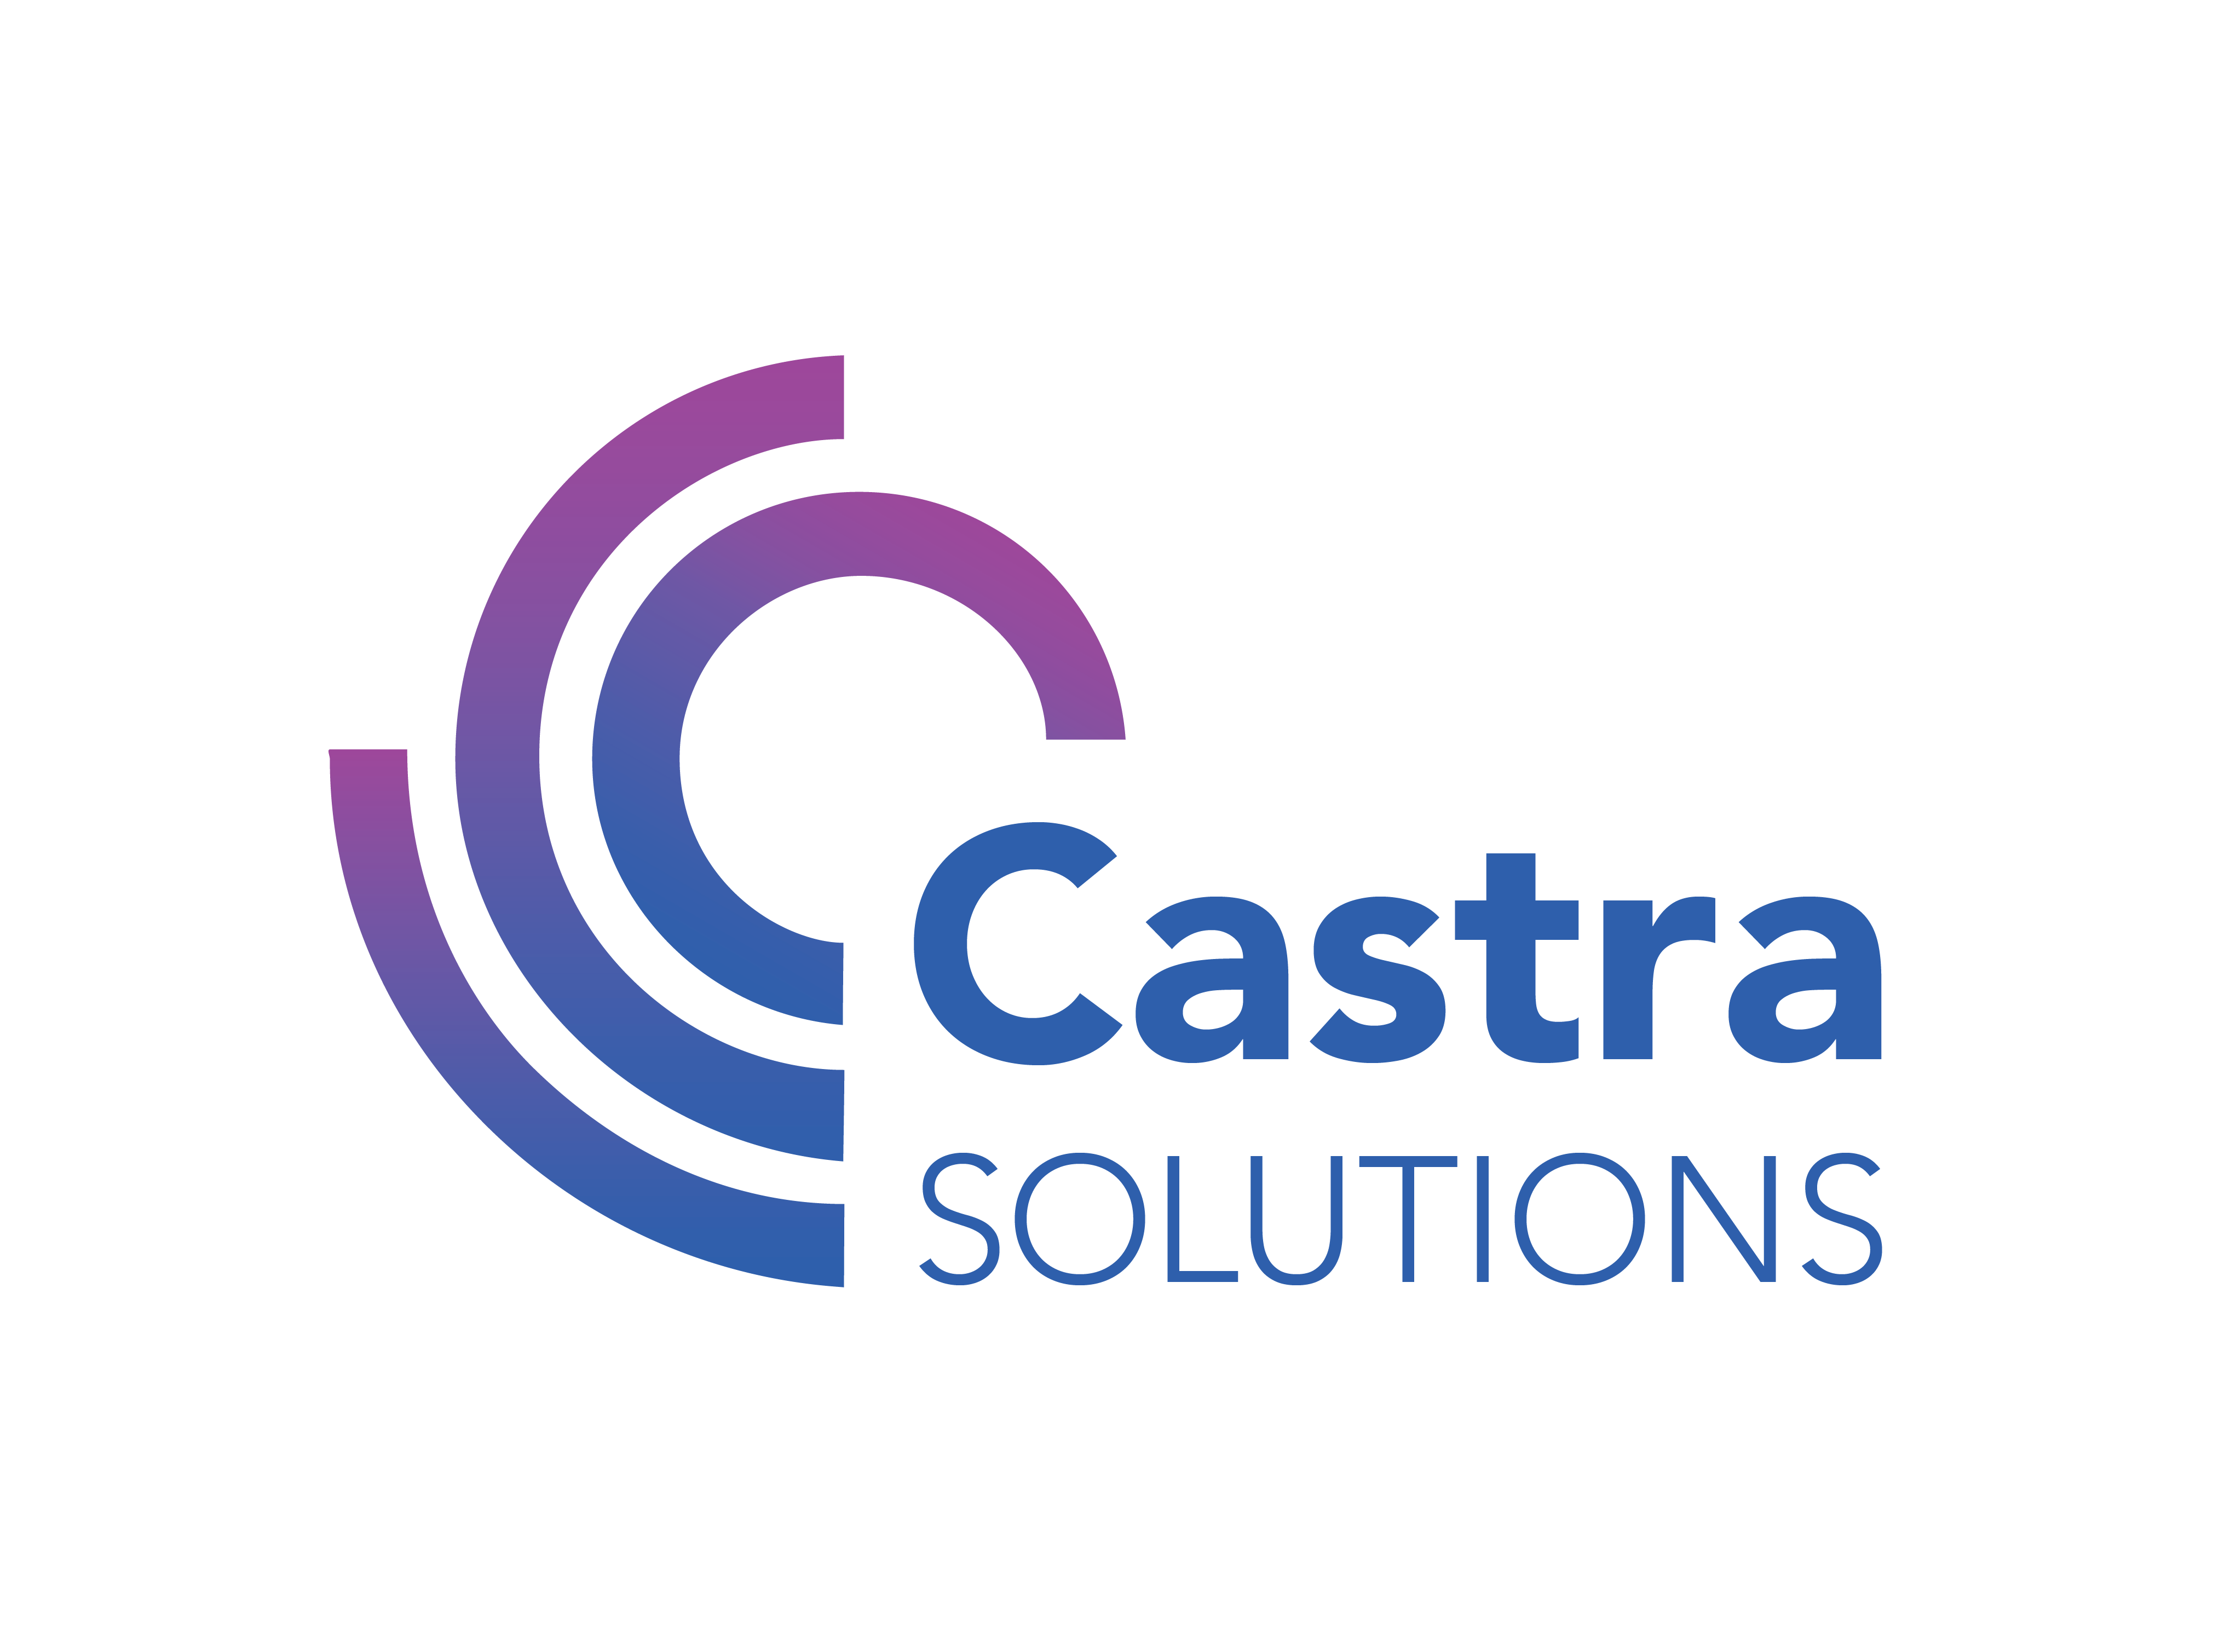 Castra Solutions Ltd in Elioplus